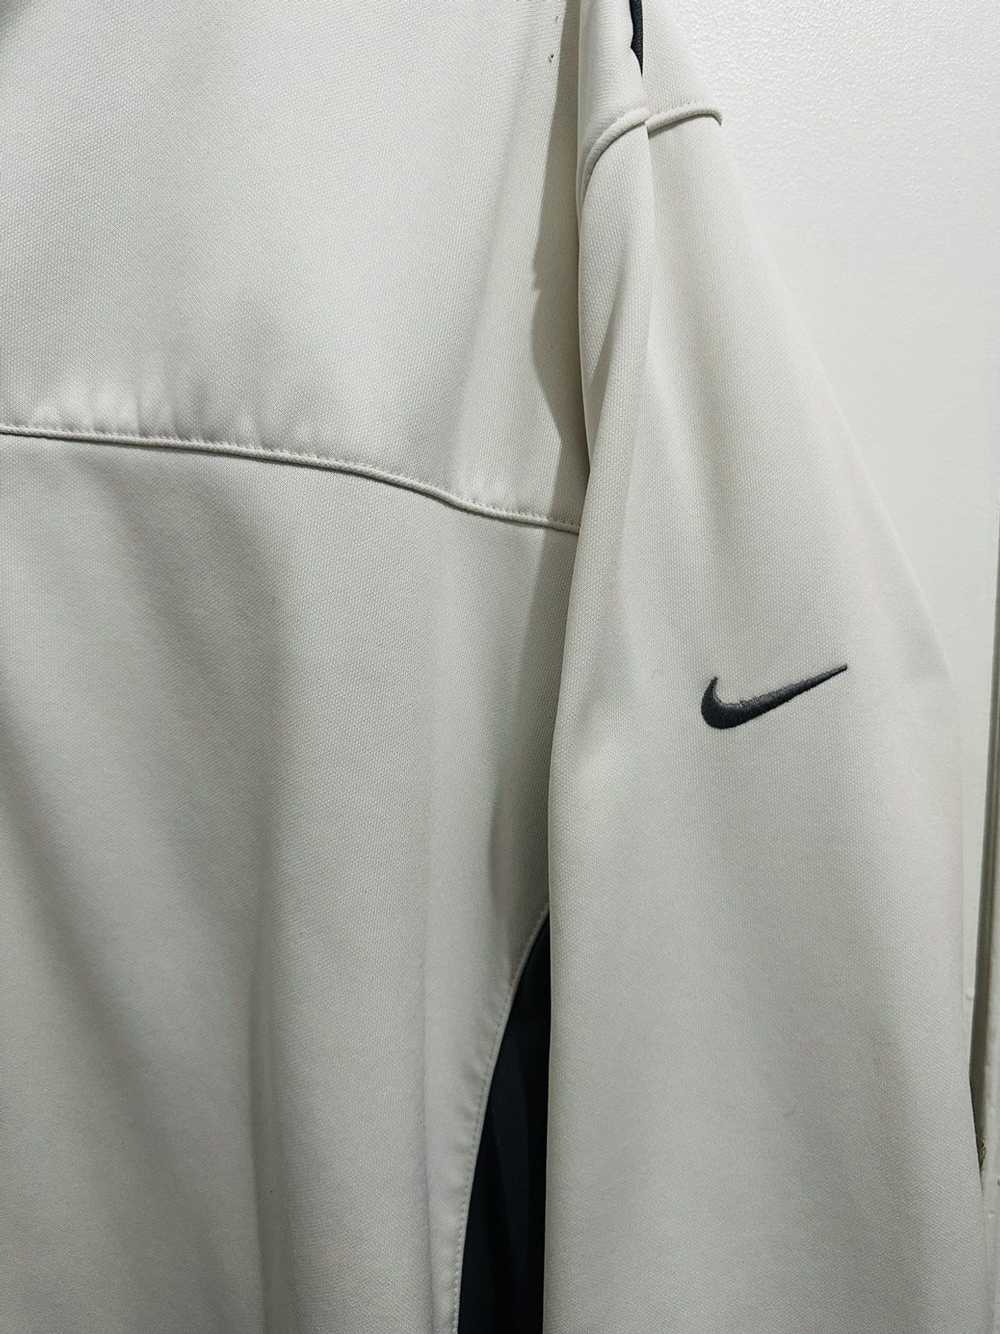 Nike Nike Golf Zip Up - image 2